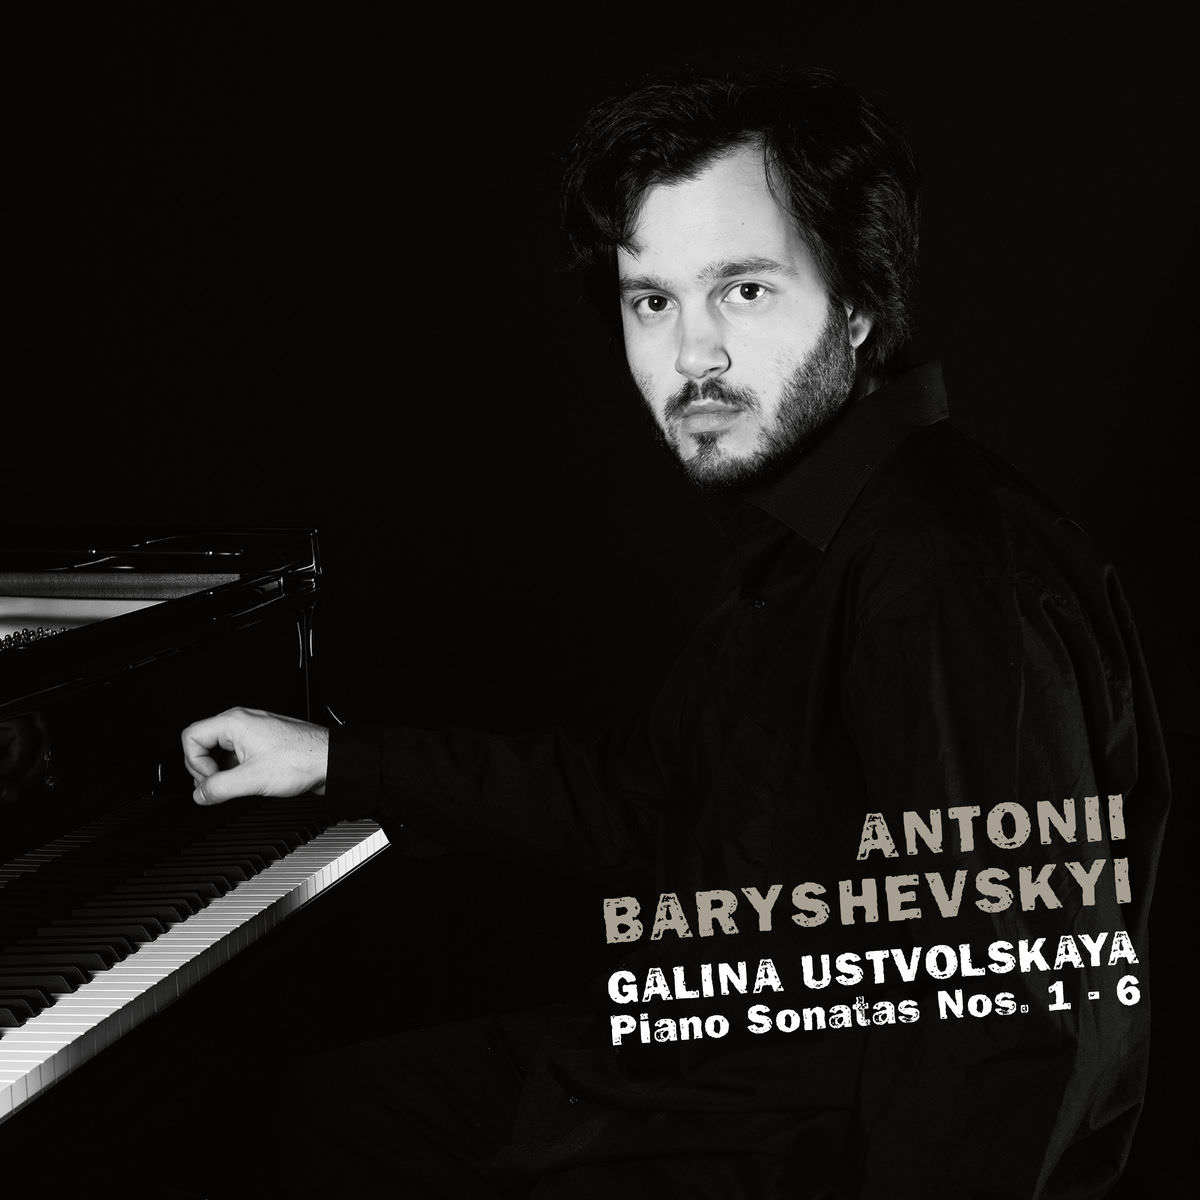 Antonii Baryshevskyi – Galina Ustvolskaya: Piano Sonatas Nos. 1 – 6 (2017) [FLAC 24bit/48kHz]